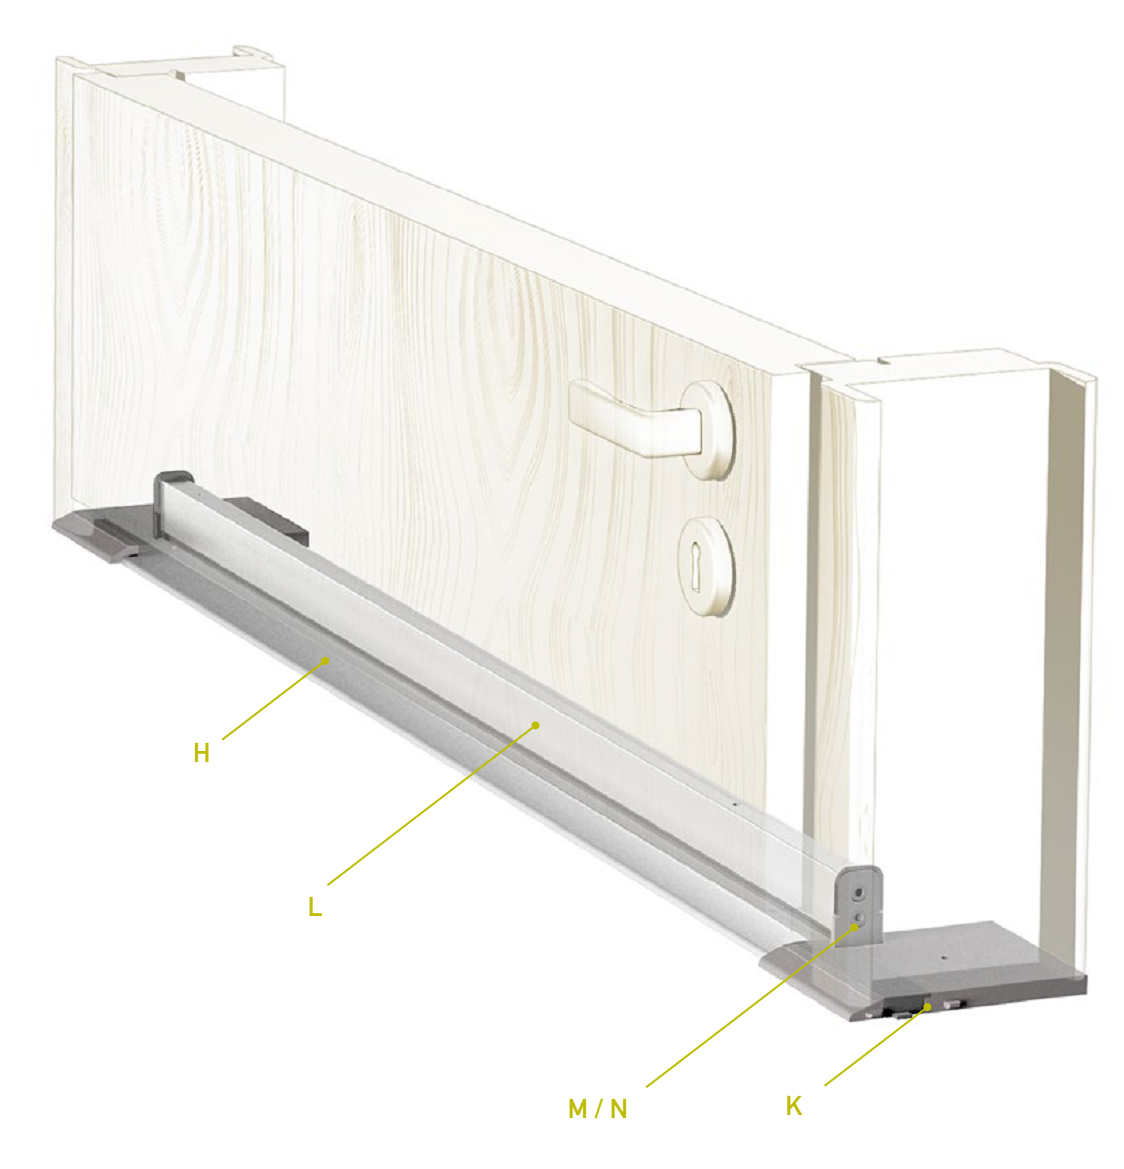 CCE -  Soglia TERMO ULISSE WOOD per porta d'ingresso in legno con taglio termico - col. ARGENTO - l. 71 - h. 9 - l. max 1830